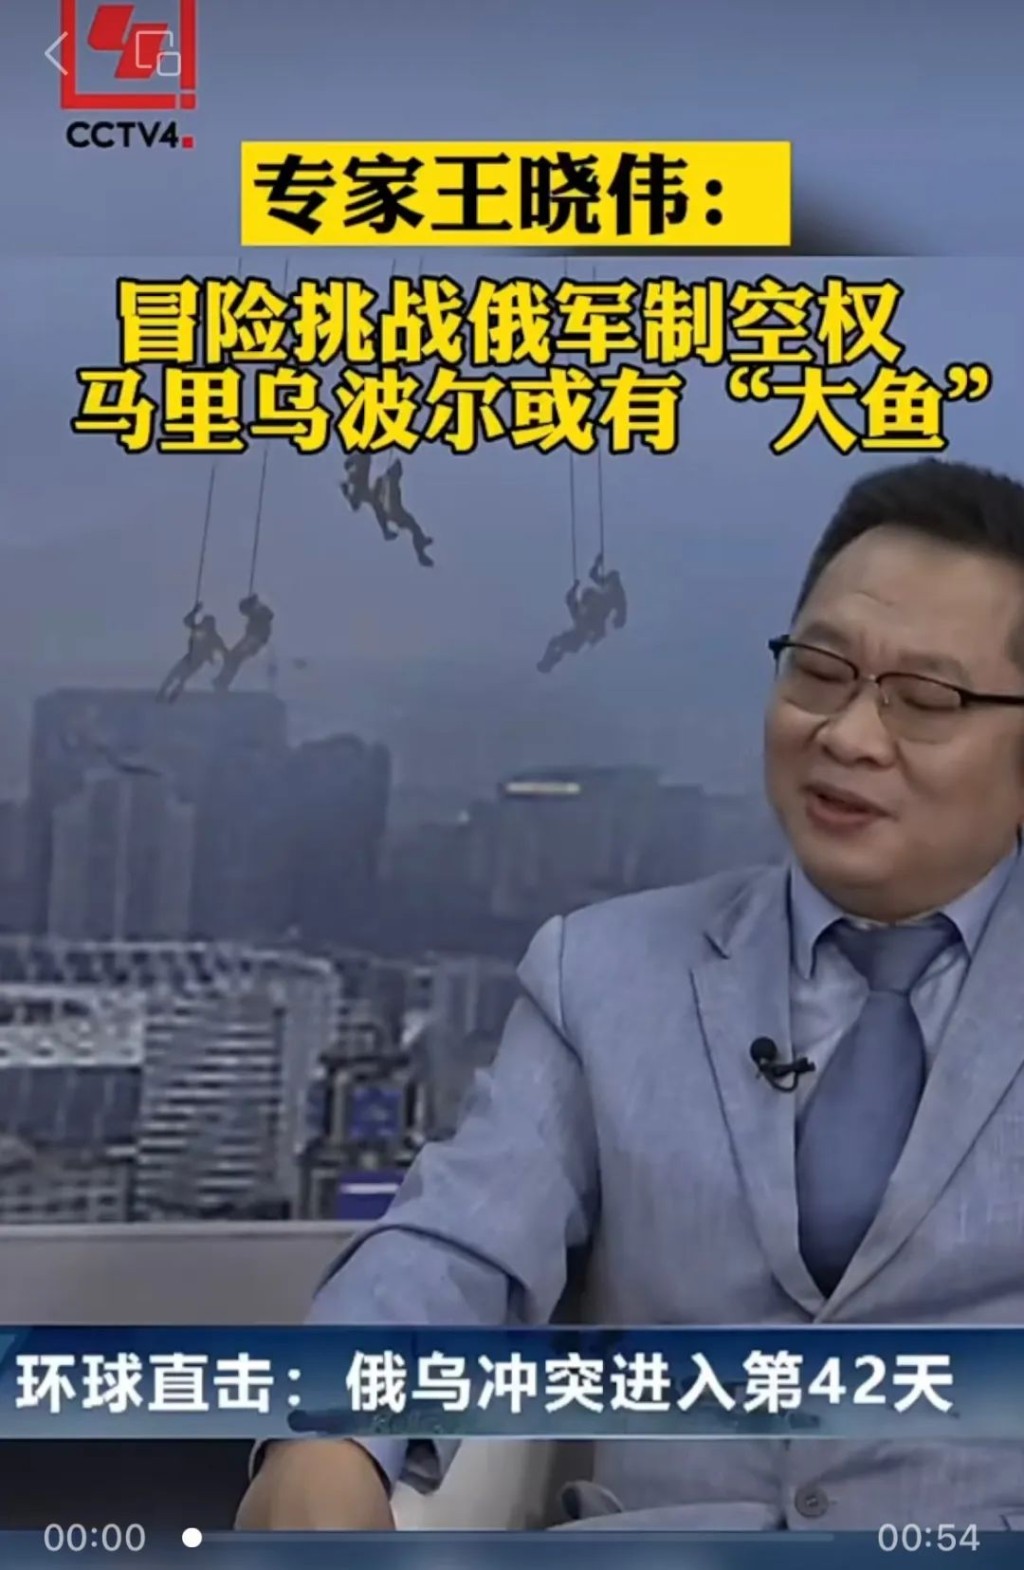 王晓伟冒用「莫斯科大学外籍教授」身份，参加央视节目。互联网